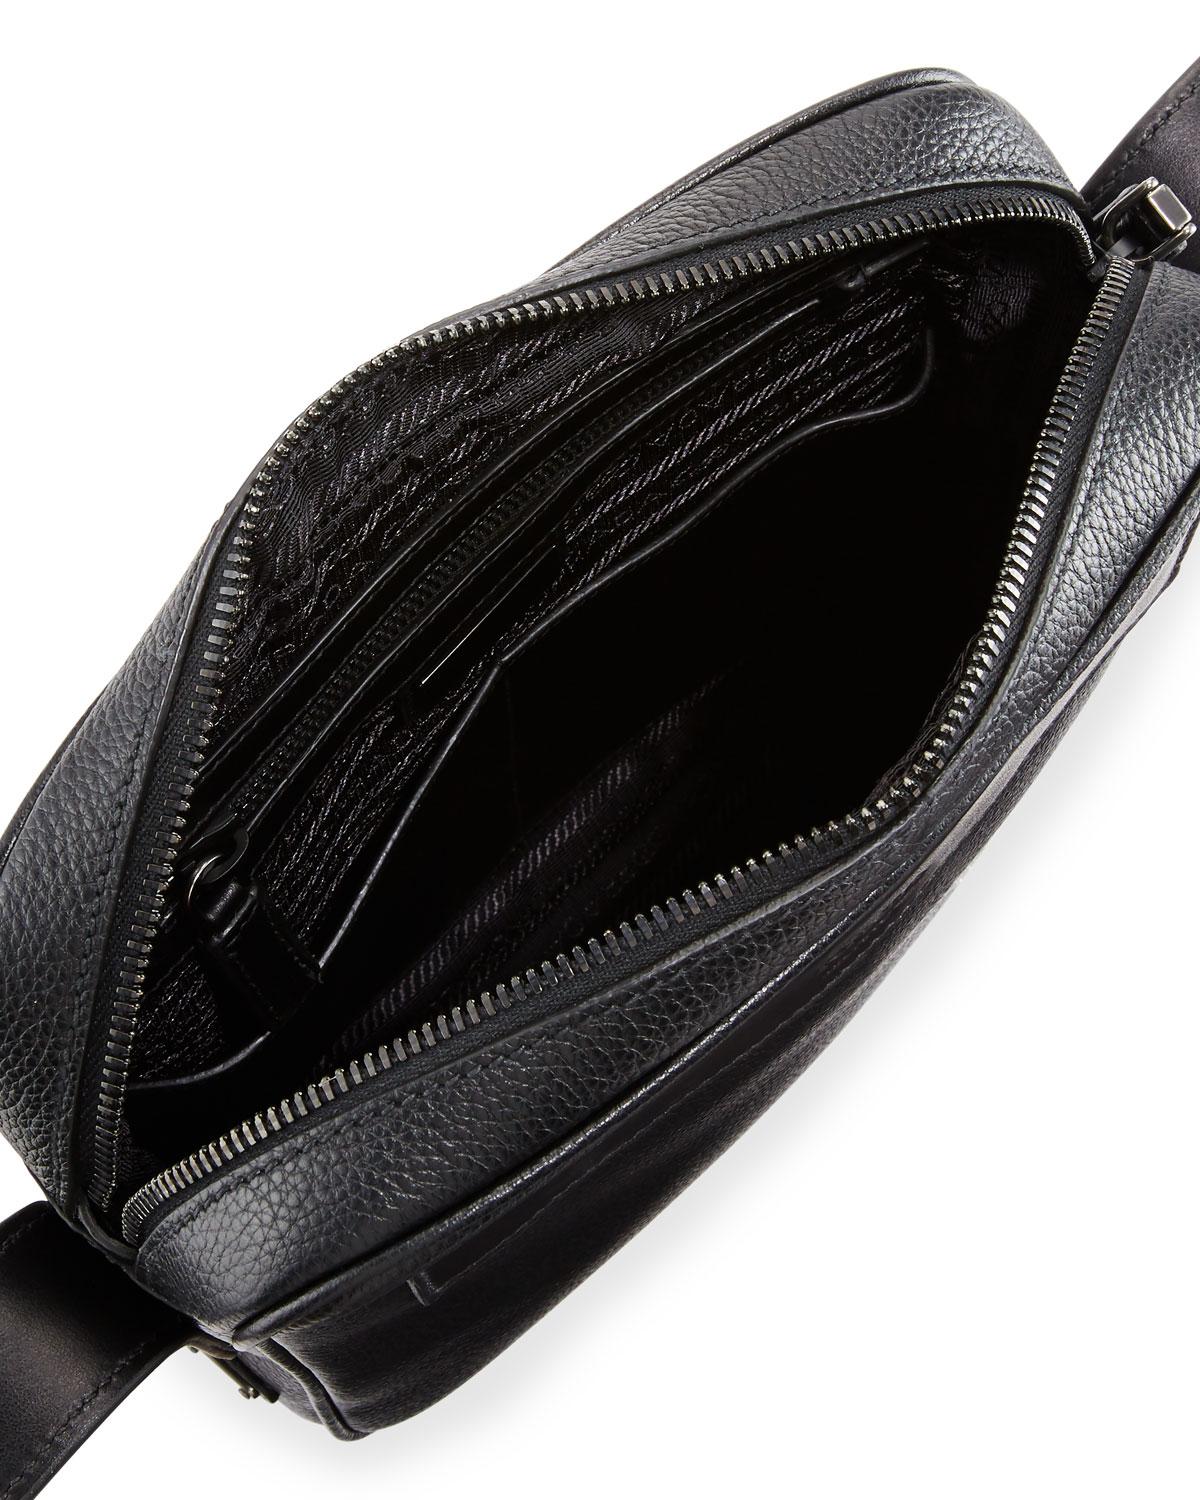 Prada Men's Leather Crossbody Messenger Bag in Black for Men - Lyst